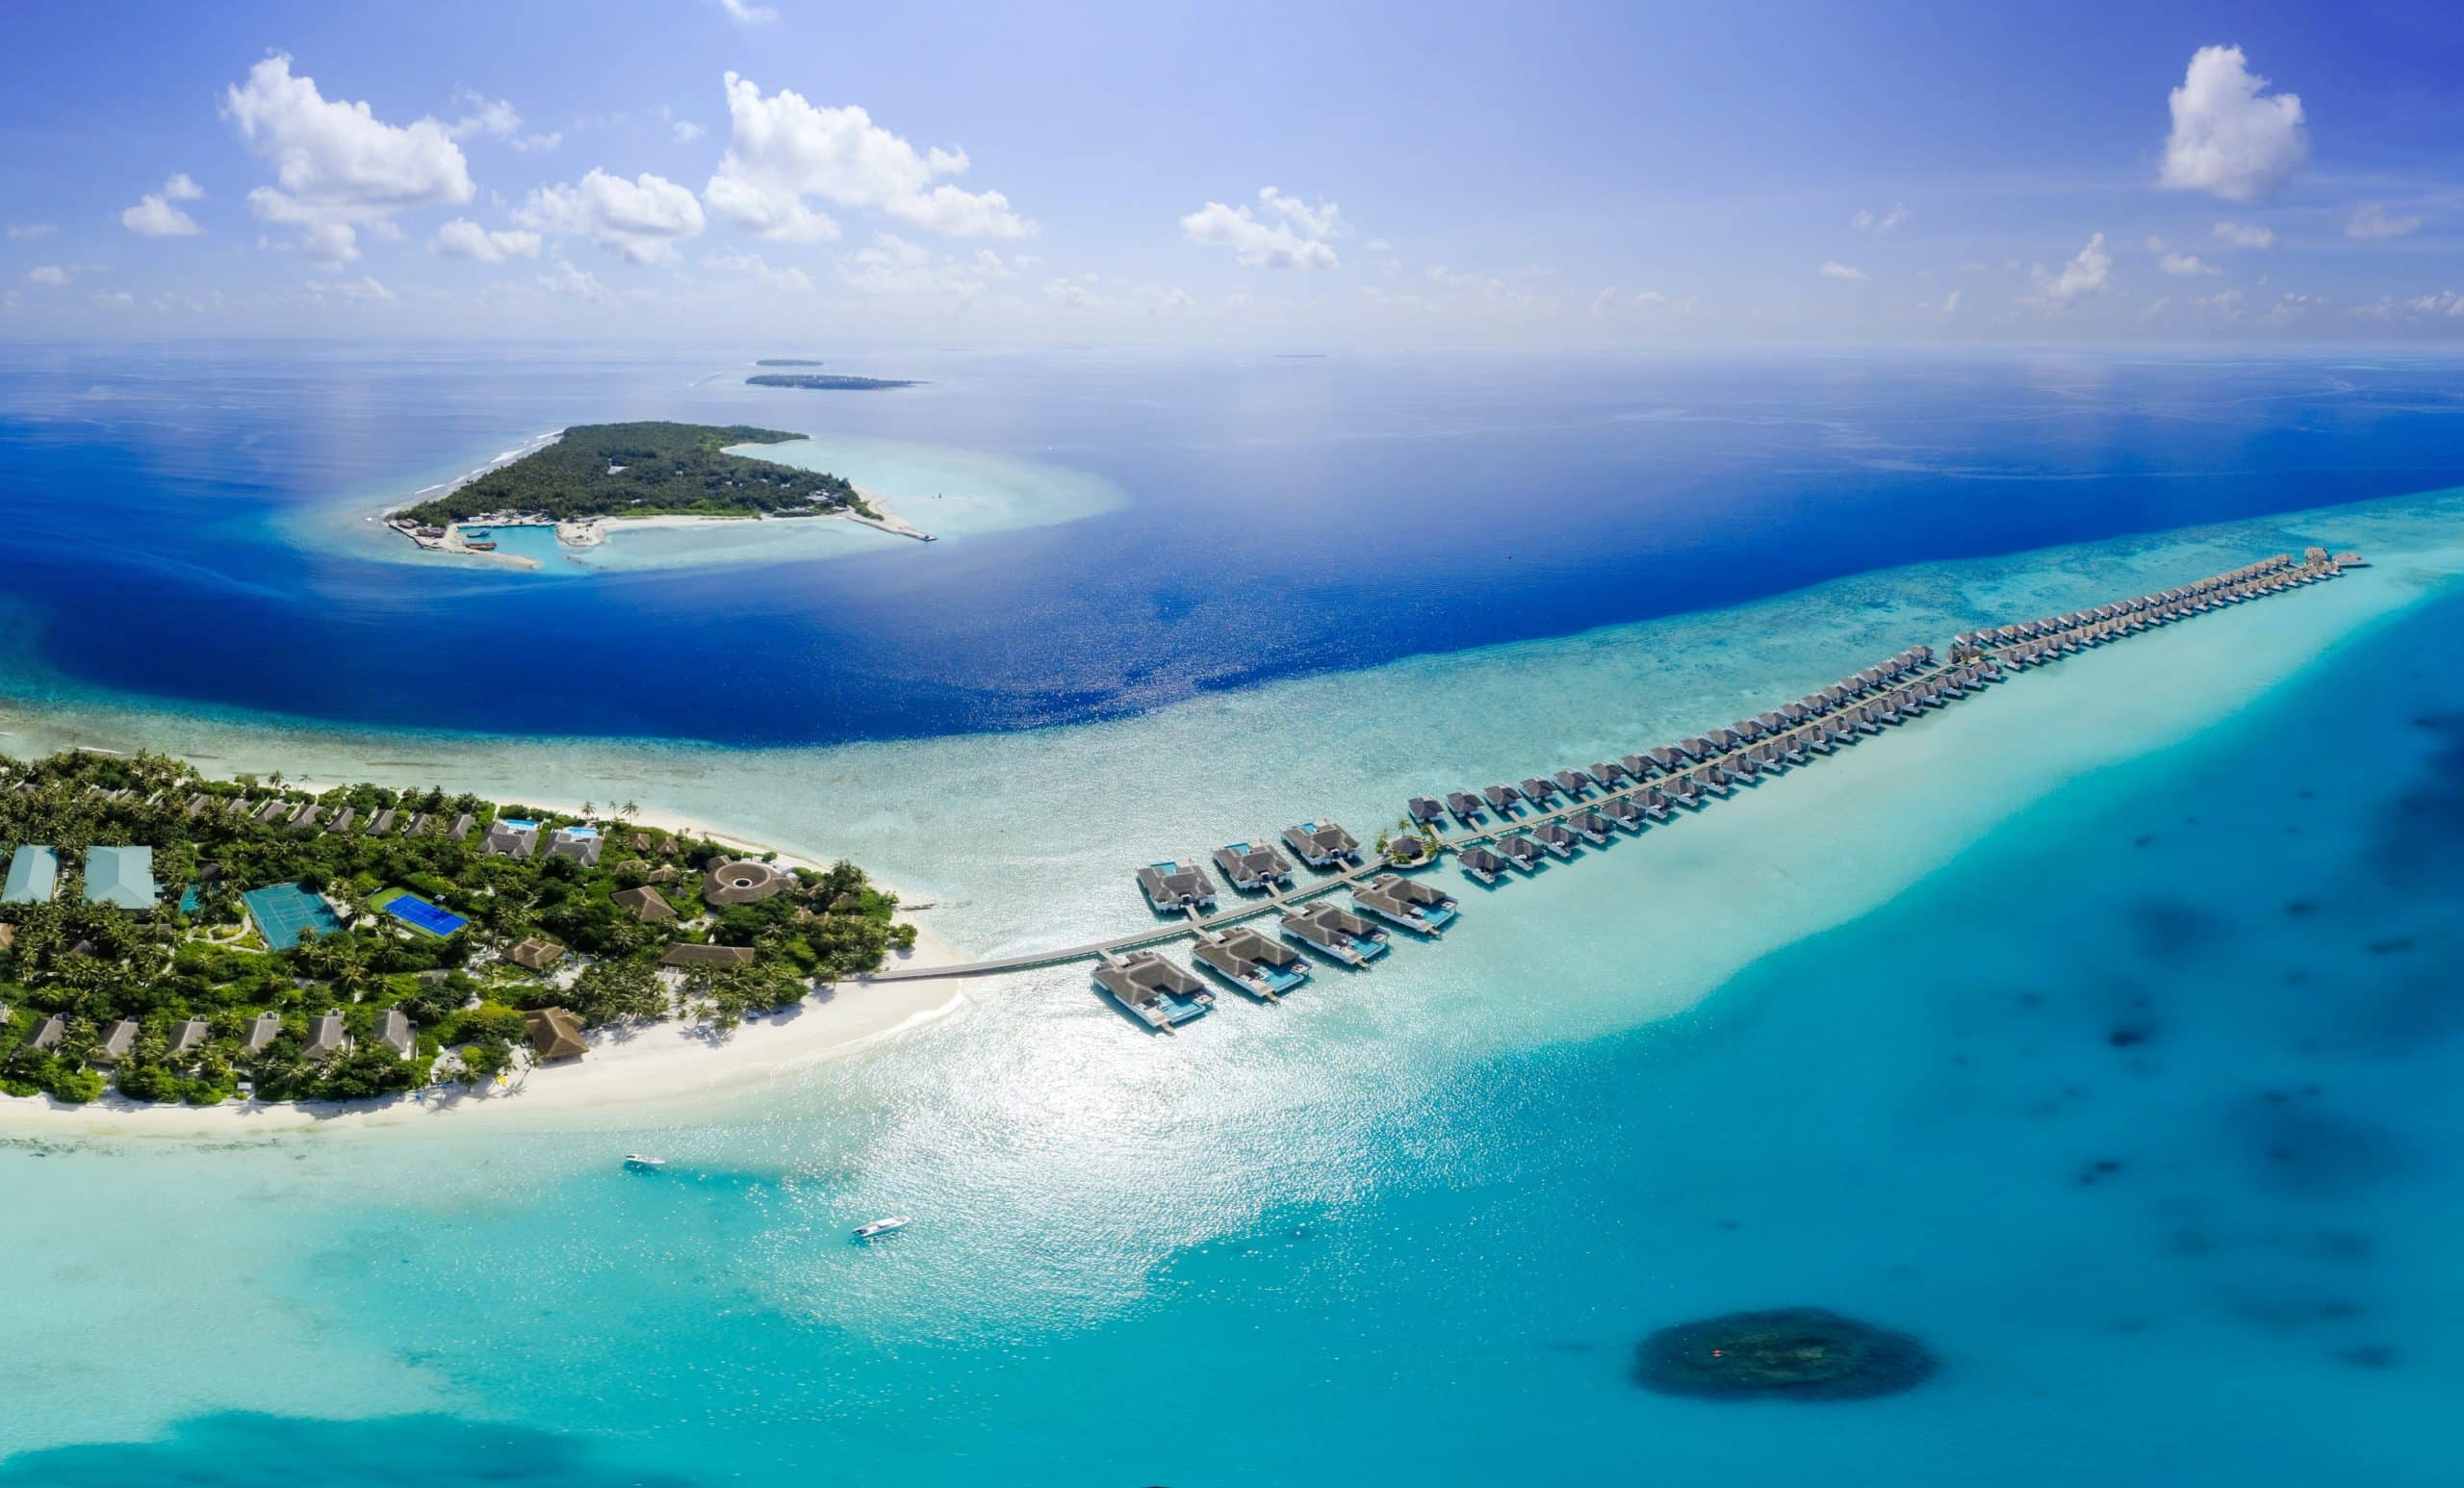 Maldives photo de plage, belle destination lune de miel